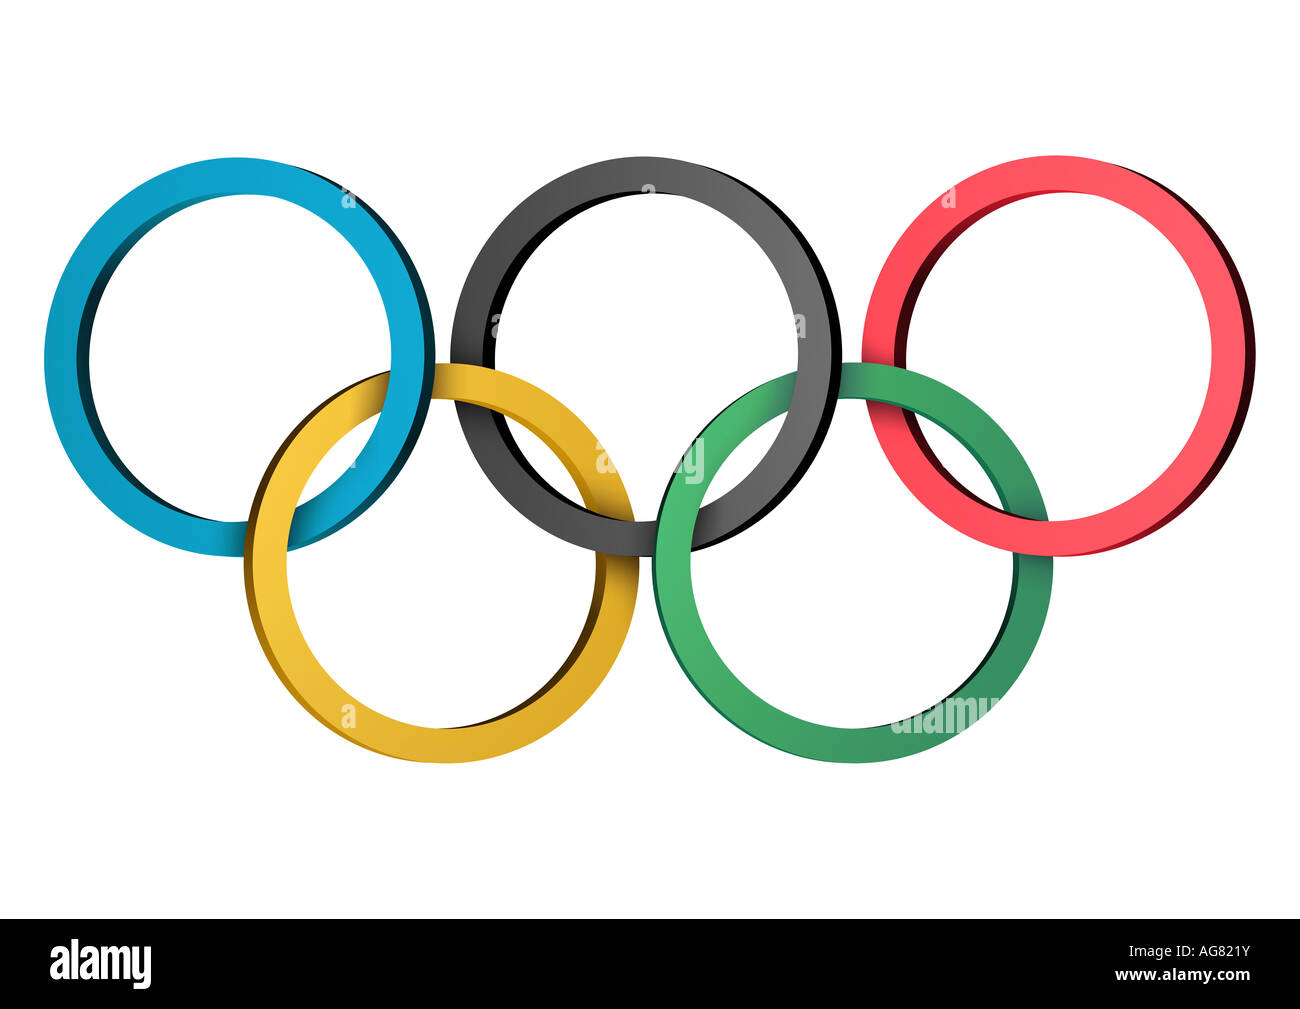 Olympischen Ringe Nur Redaktionell Verwendbar Olympischen Ringe nur zu redaktionellen Zwecken Stockfoto